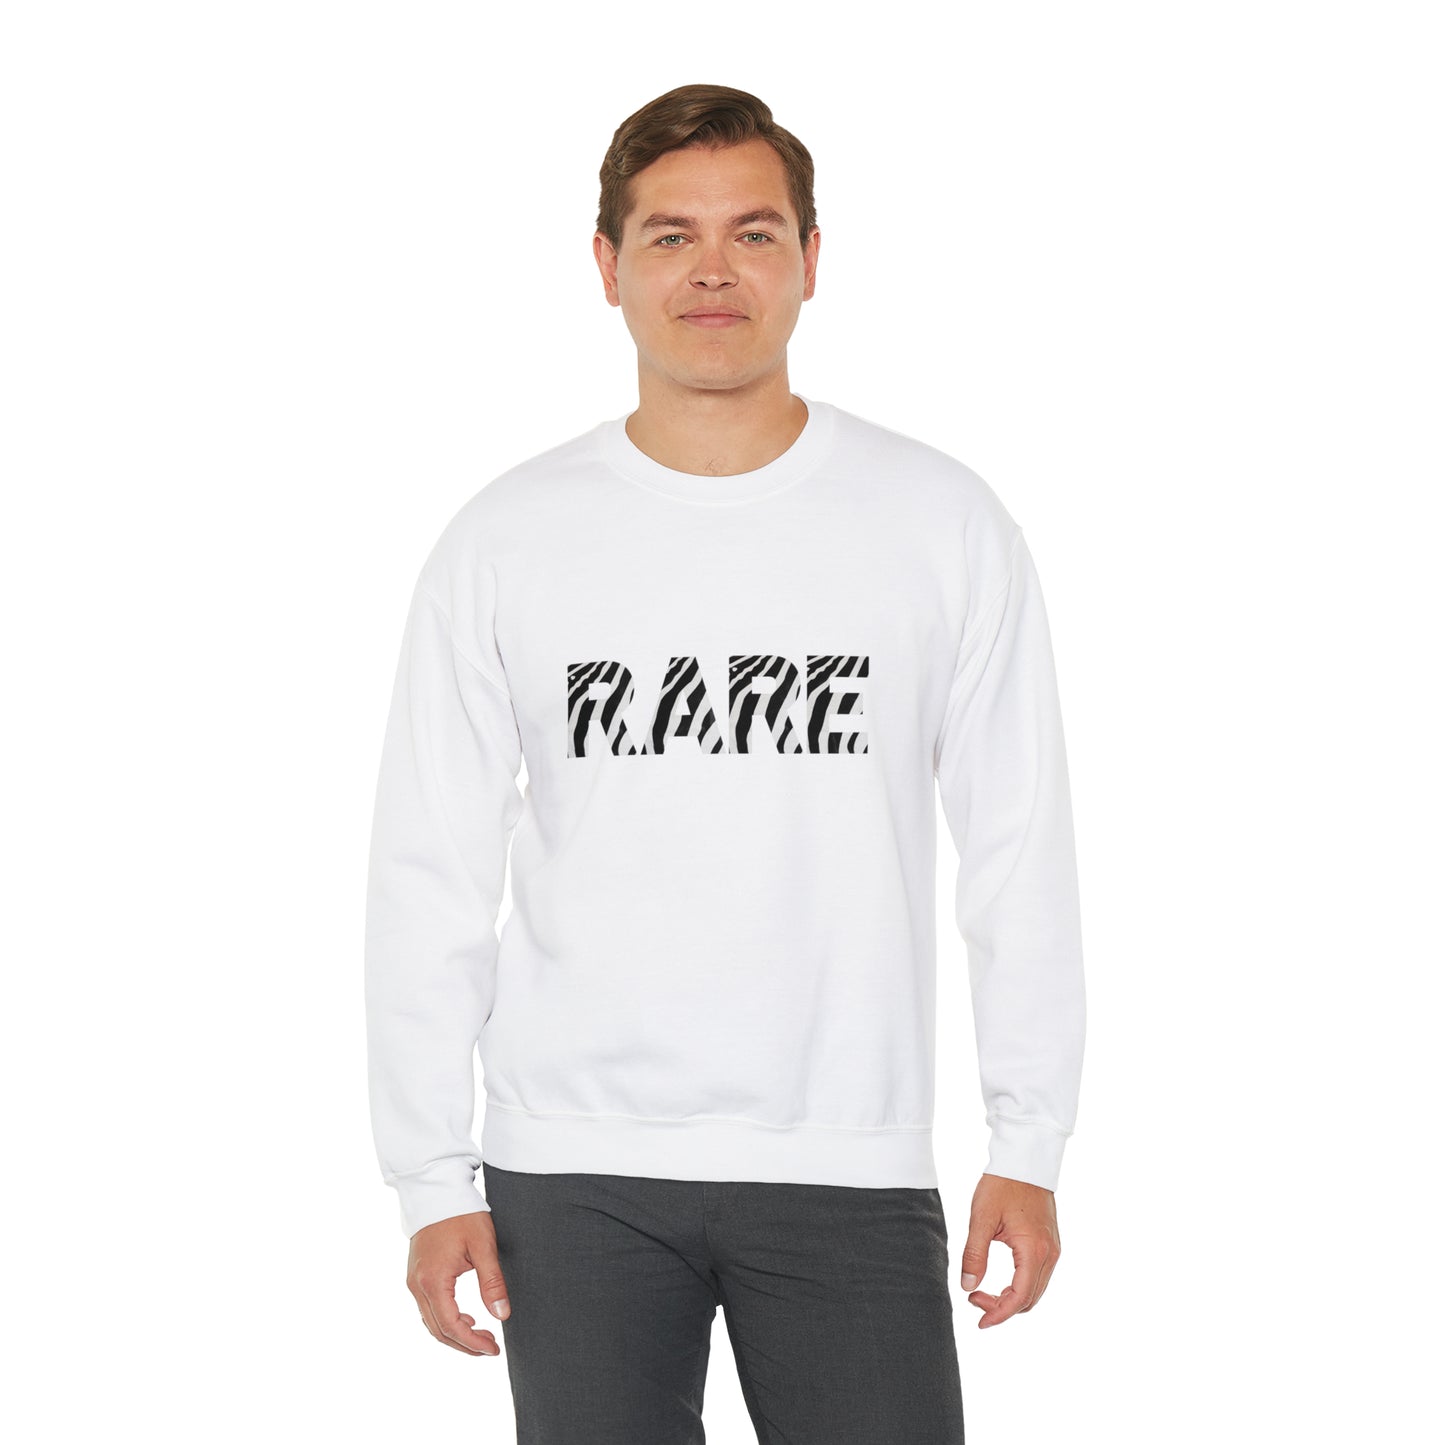 "Rare" Disease Zebra Print Sweatshirt